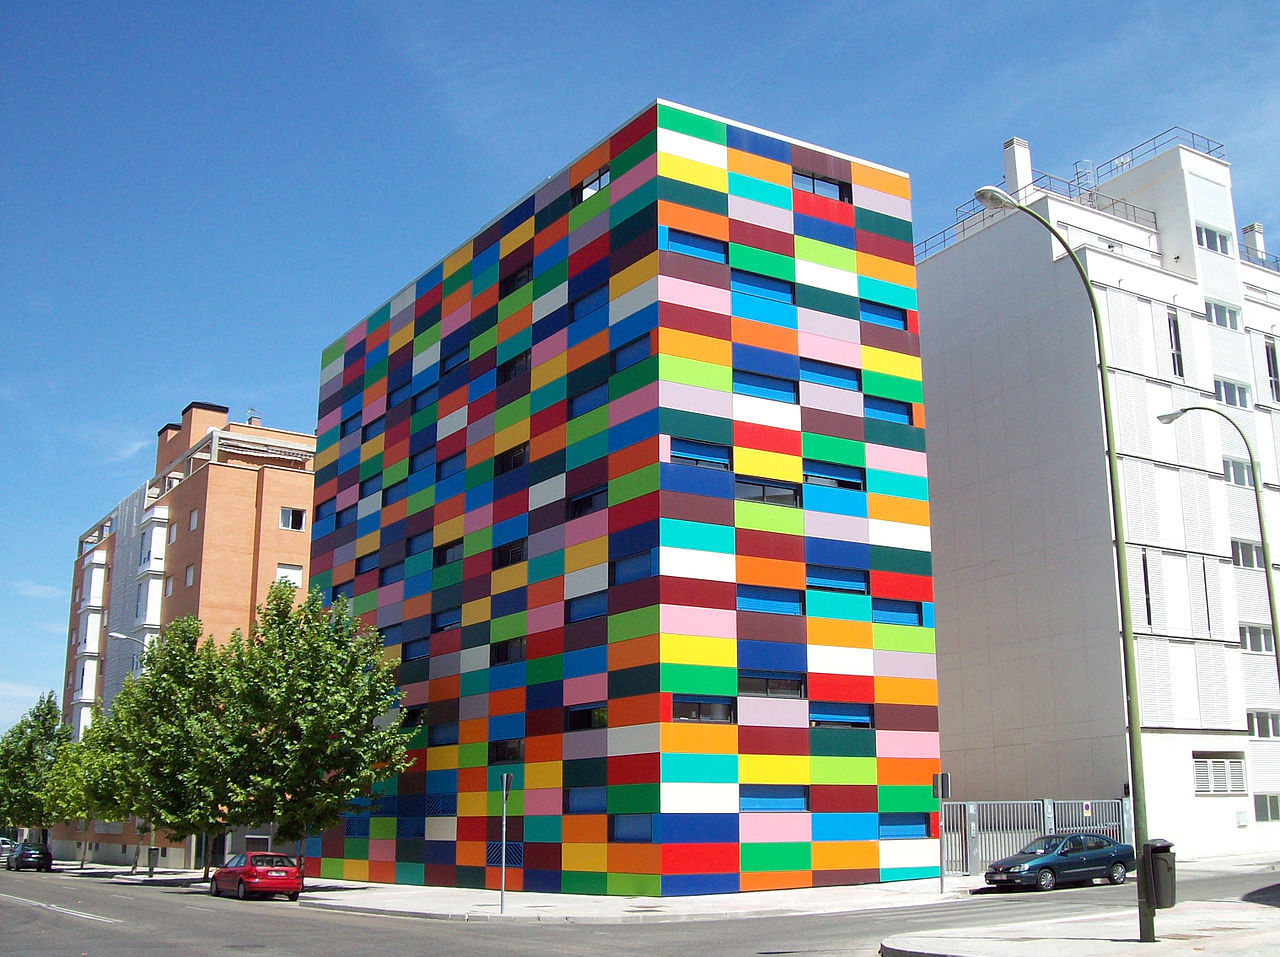 Carabanchel 24 (Madrid)
Este colorido edifico de 18 viviendas de protección oficial (VPP) es obra del arquitecto Rafael Cañizares Torquemada, quien para diseñarlo se inspiró en el pintor suizo Paul Klee y su obsesión por el color, habiéndose llamado...